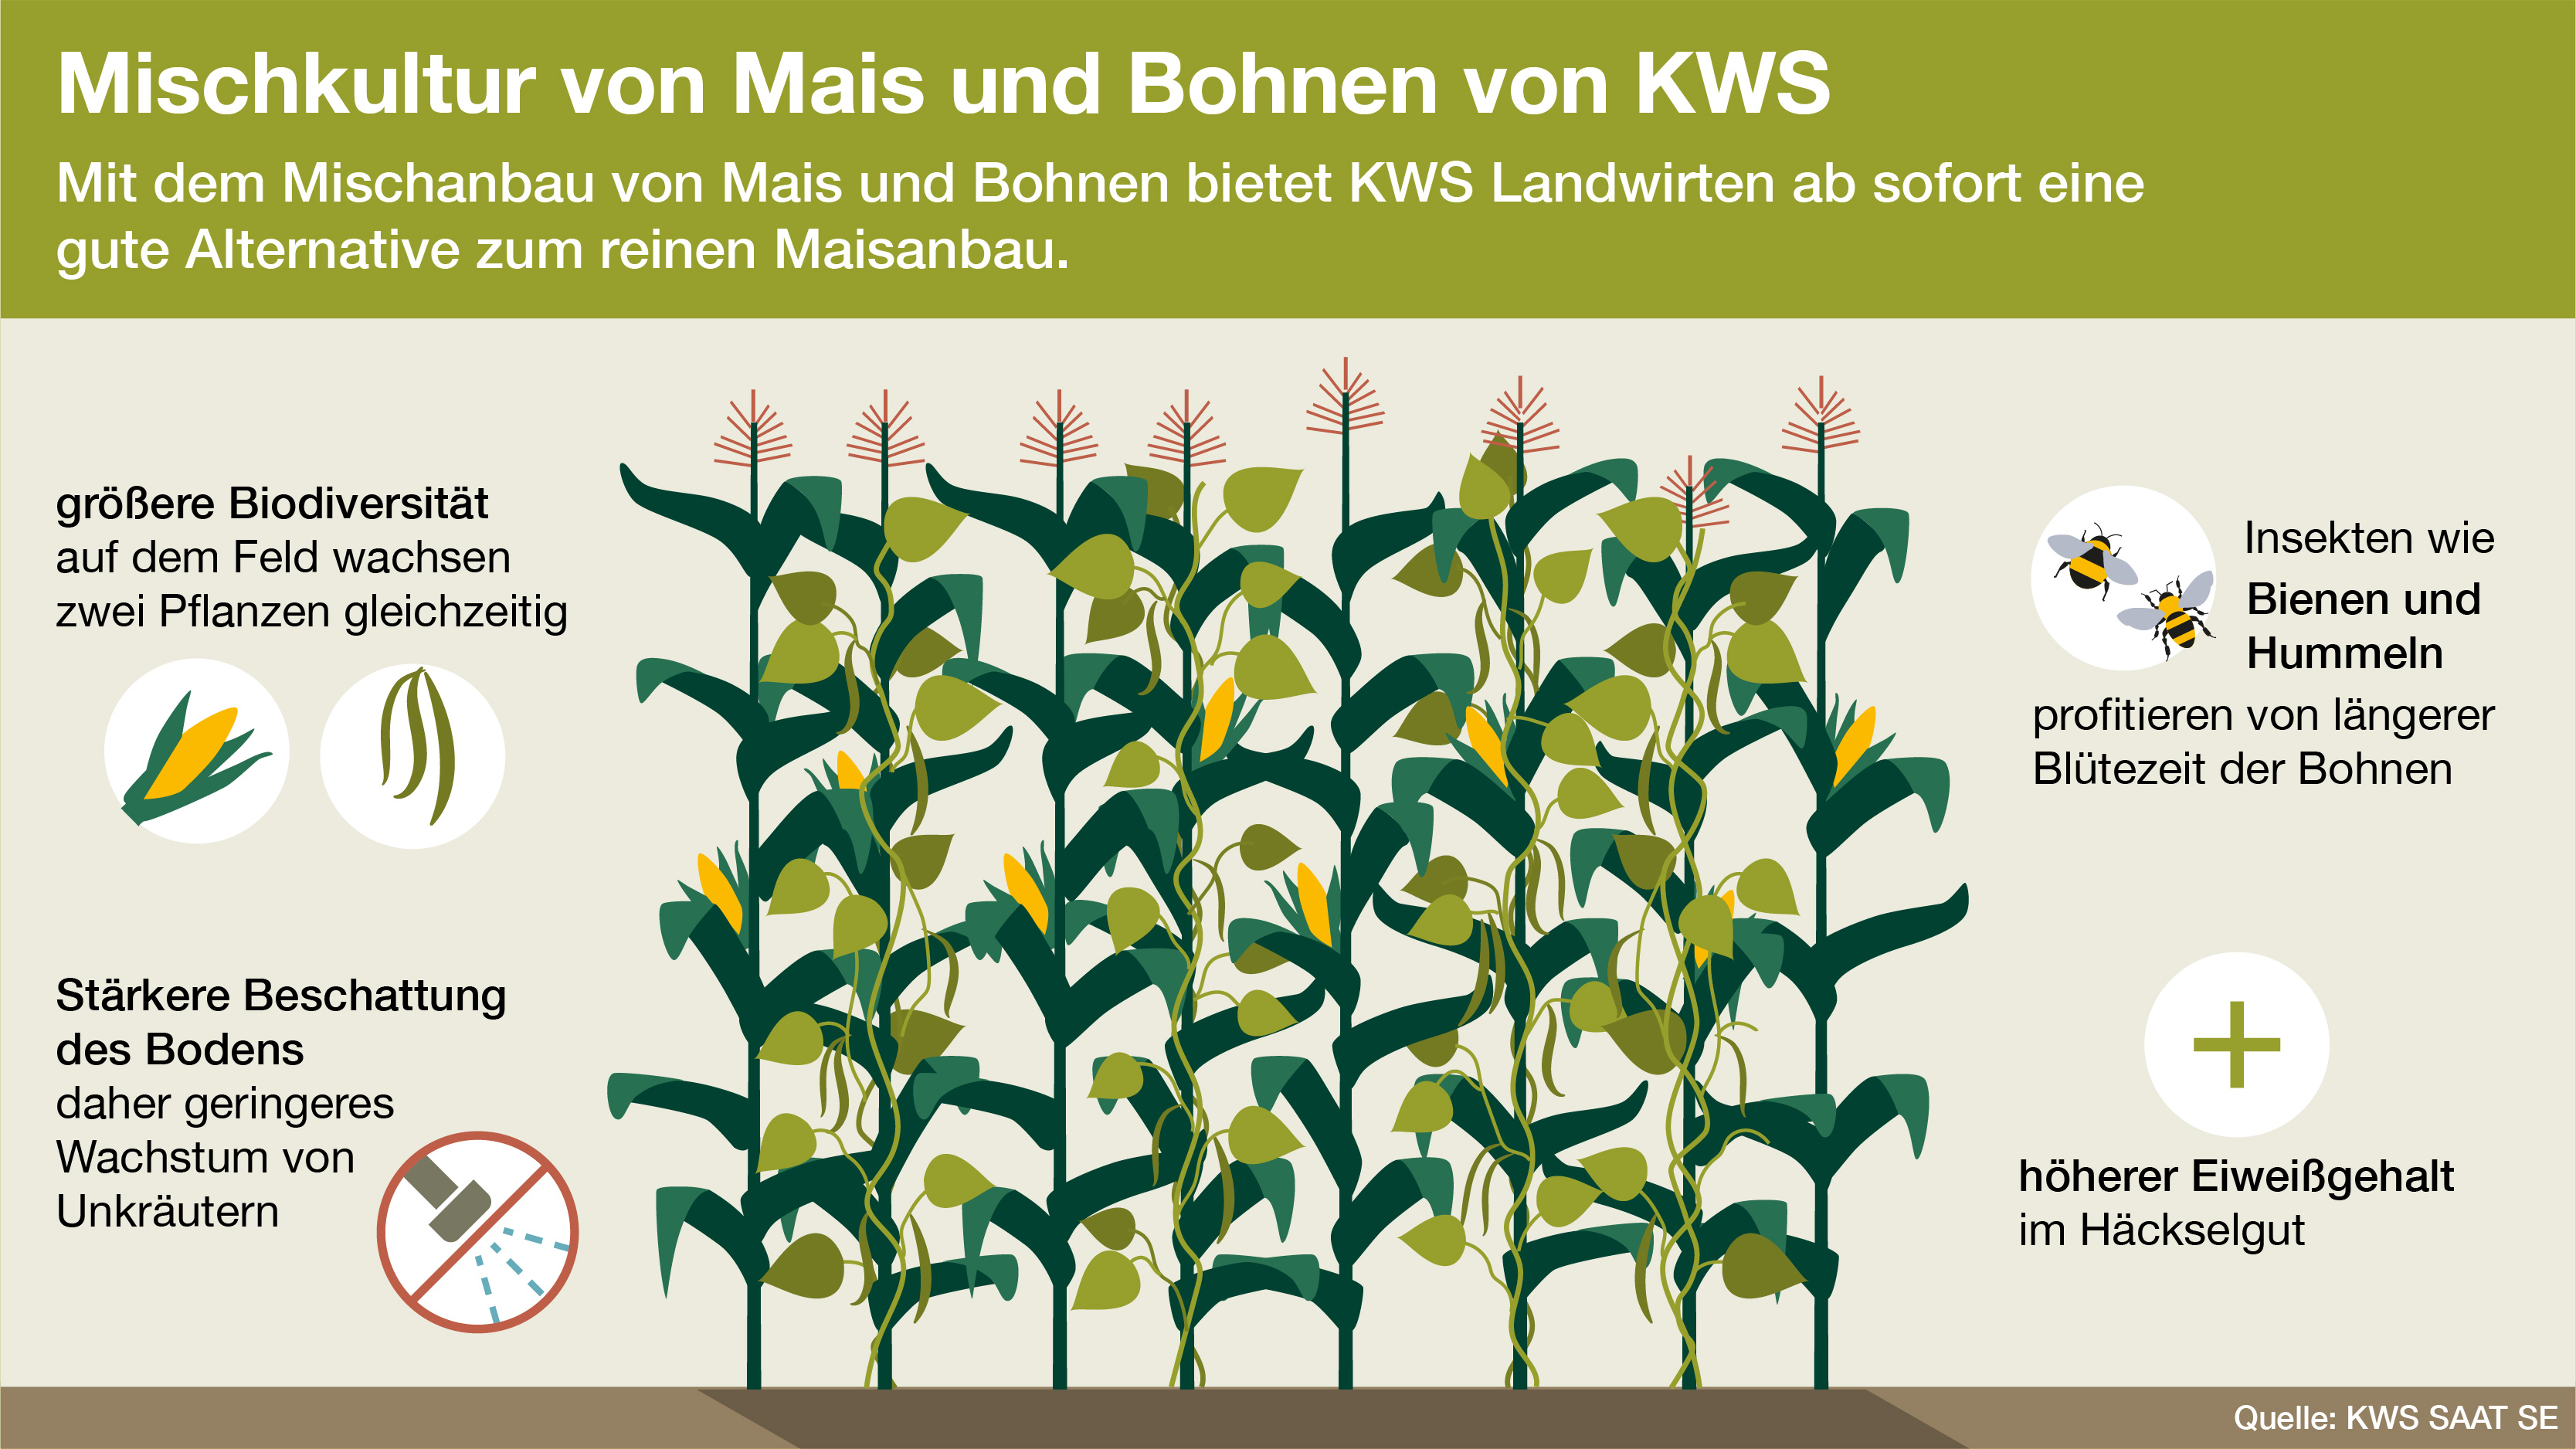 KWS Infografik: Mischkultur von Mais und Bohnen von KWS